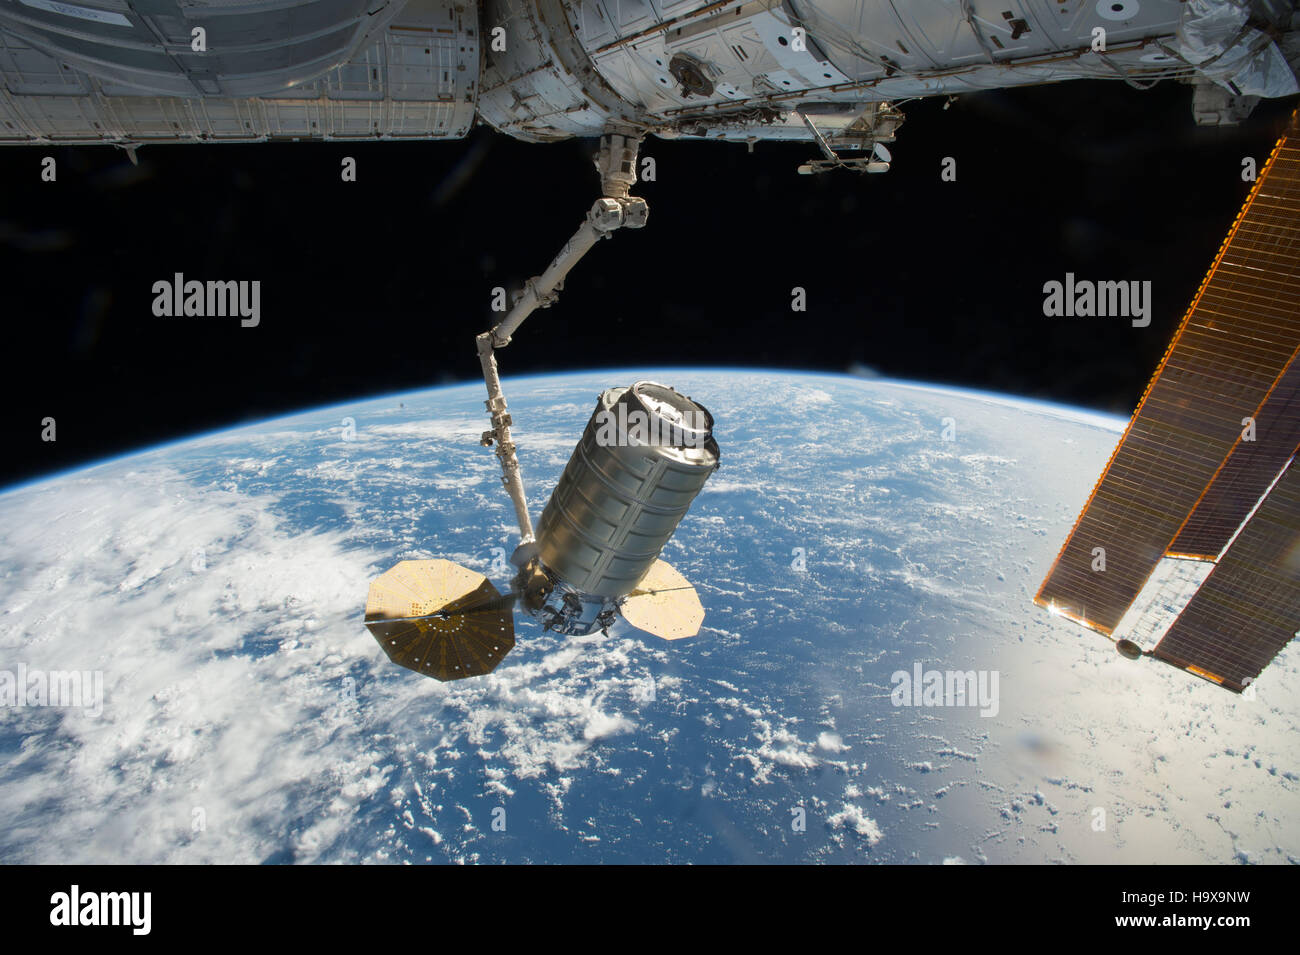 Die NASA International Space Station Canadarm2-Roboterarm fängt die orbitale ATK Cygnus Raumfahrzeug Frachtfahrzeug wie es 23. Oktober 2016 in der Erdumlaufbahn ankommt. Stockfoto